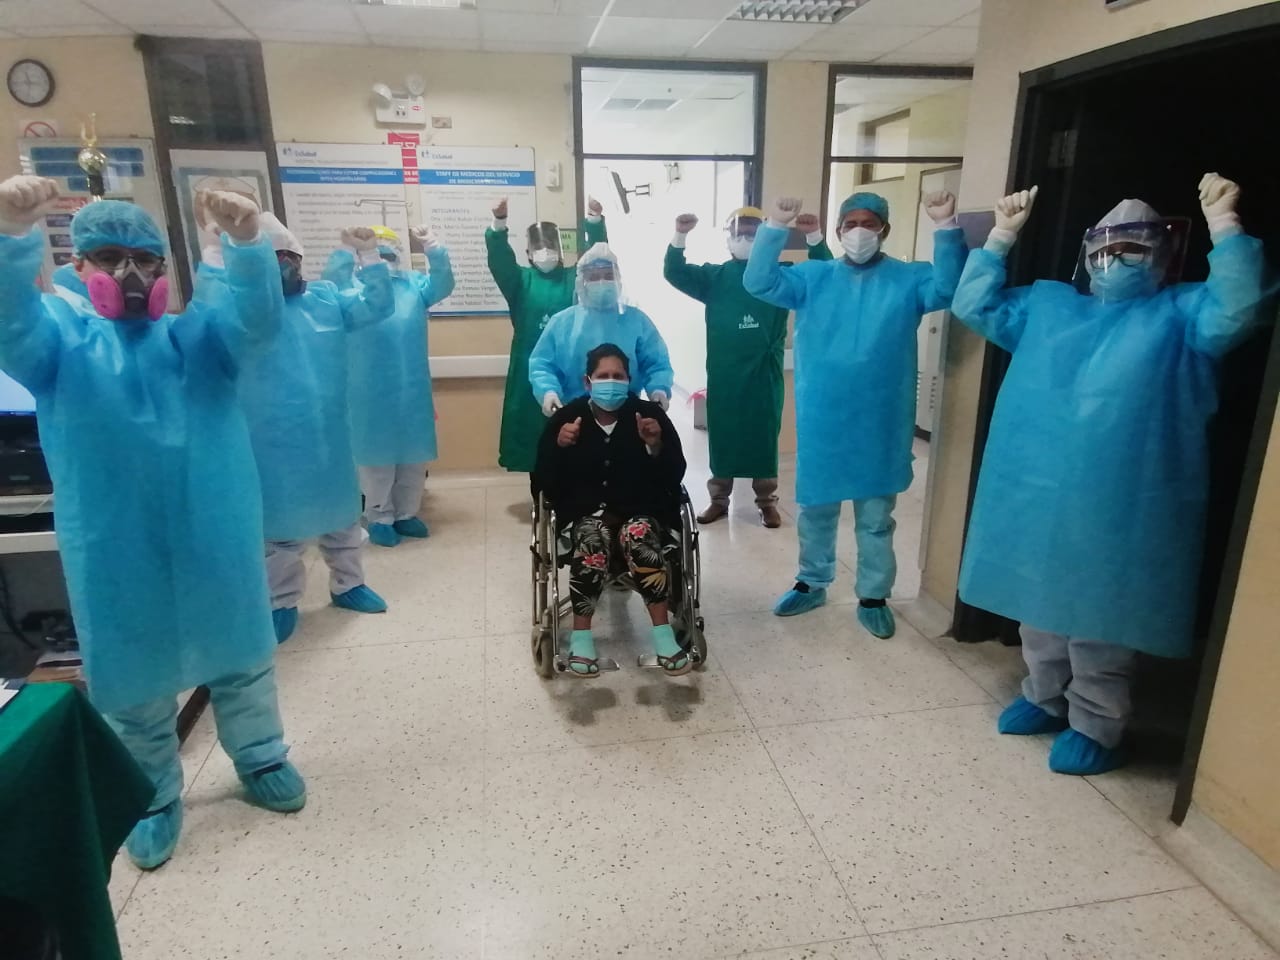 Essalud - Pacientes continúan su tratamiento en casa tras superar la etapa crítica del Covid-19 en Hospital de EsSalud en Ica